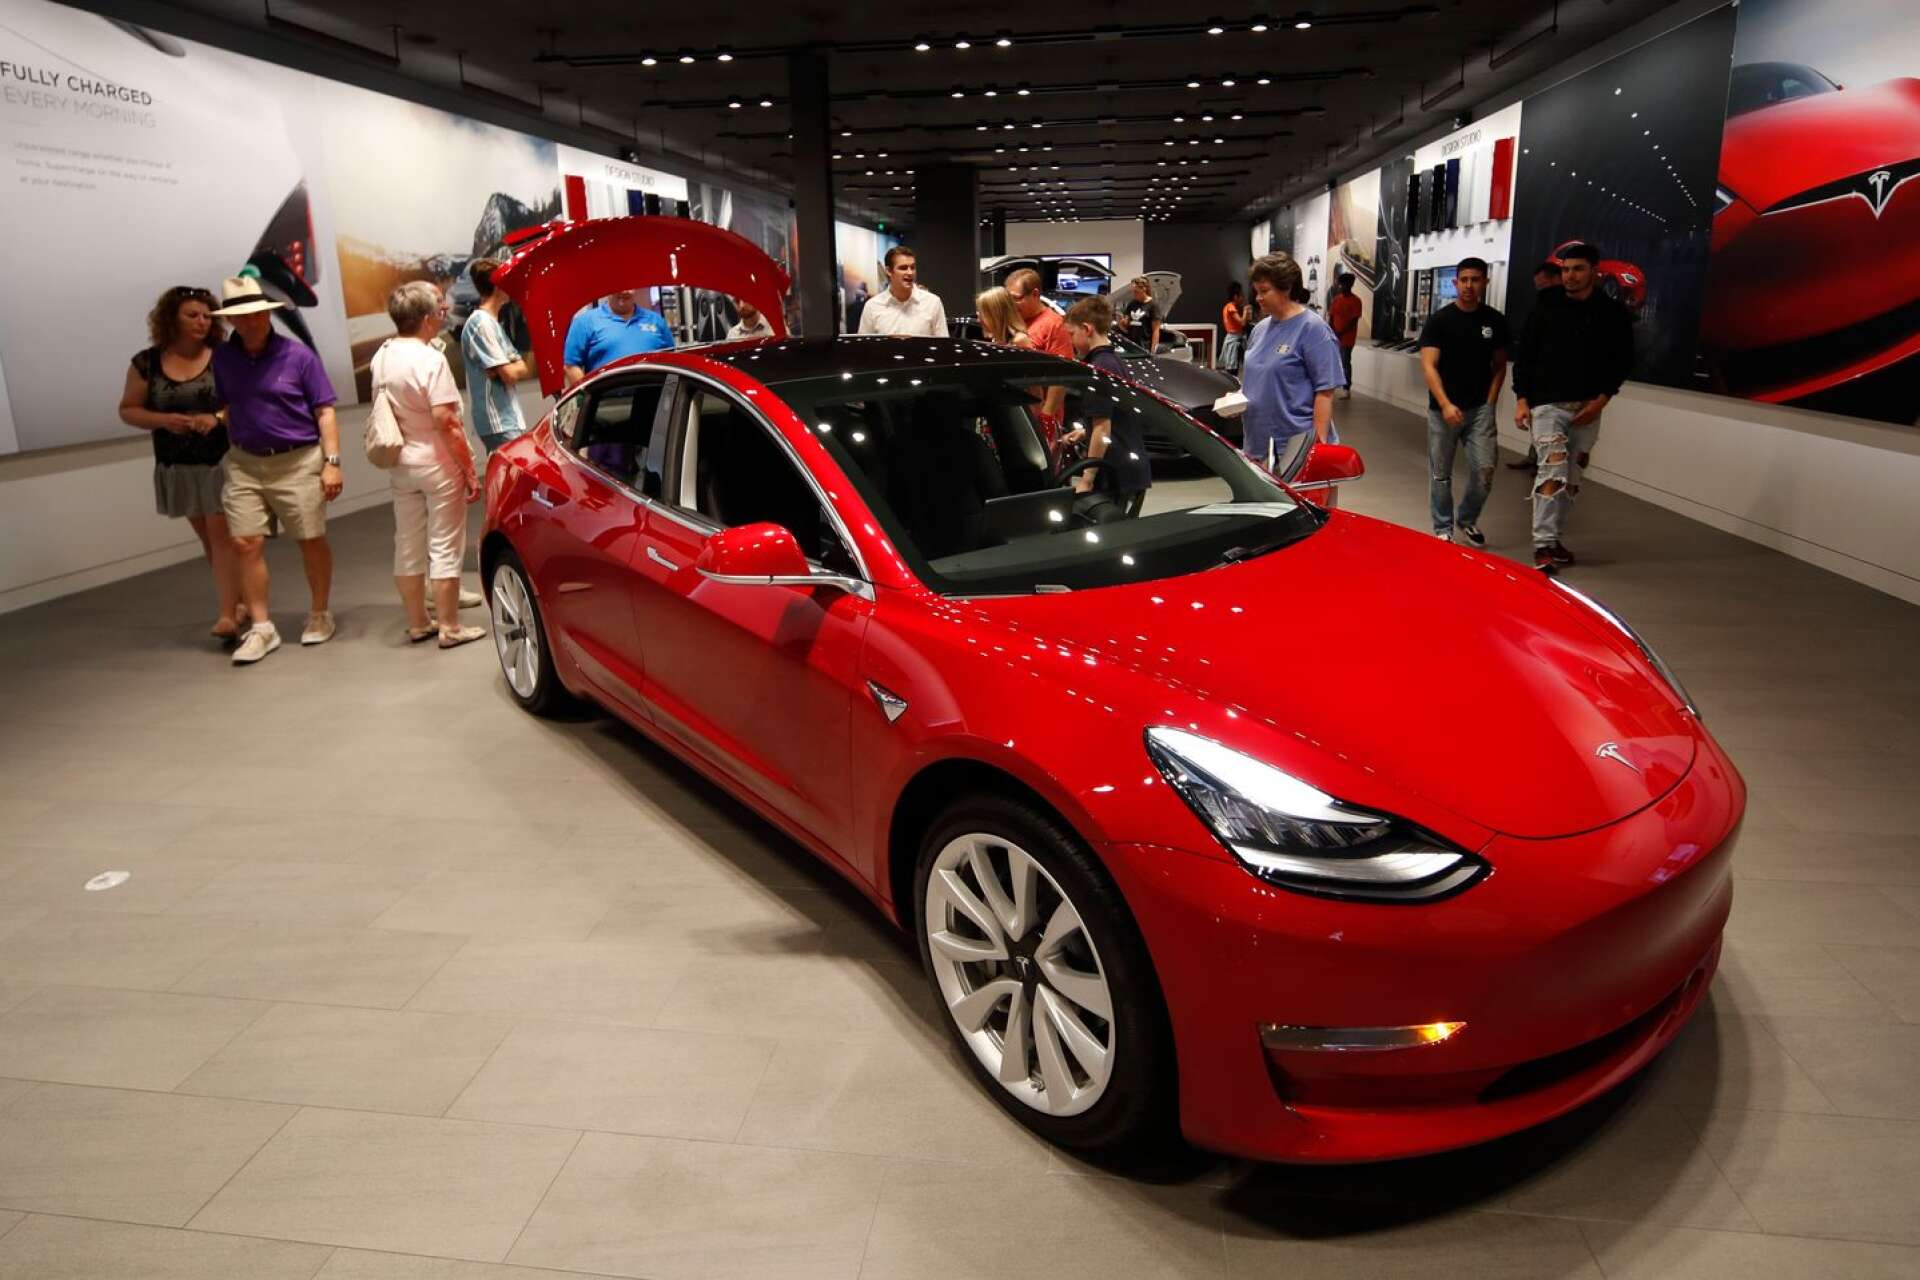 Den mest prestigefyllda bil du kan äga i Sverige enligt en undersökning - en Tesla. 